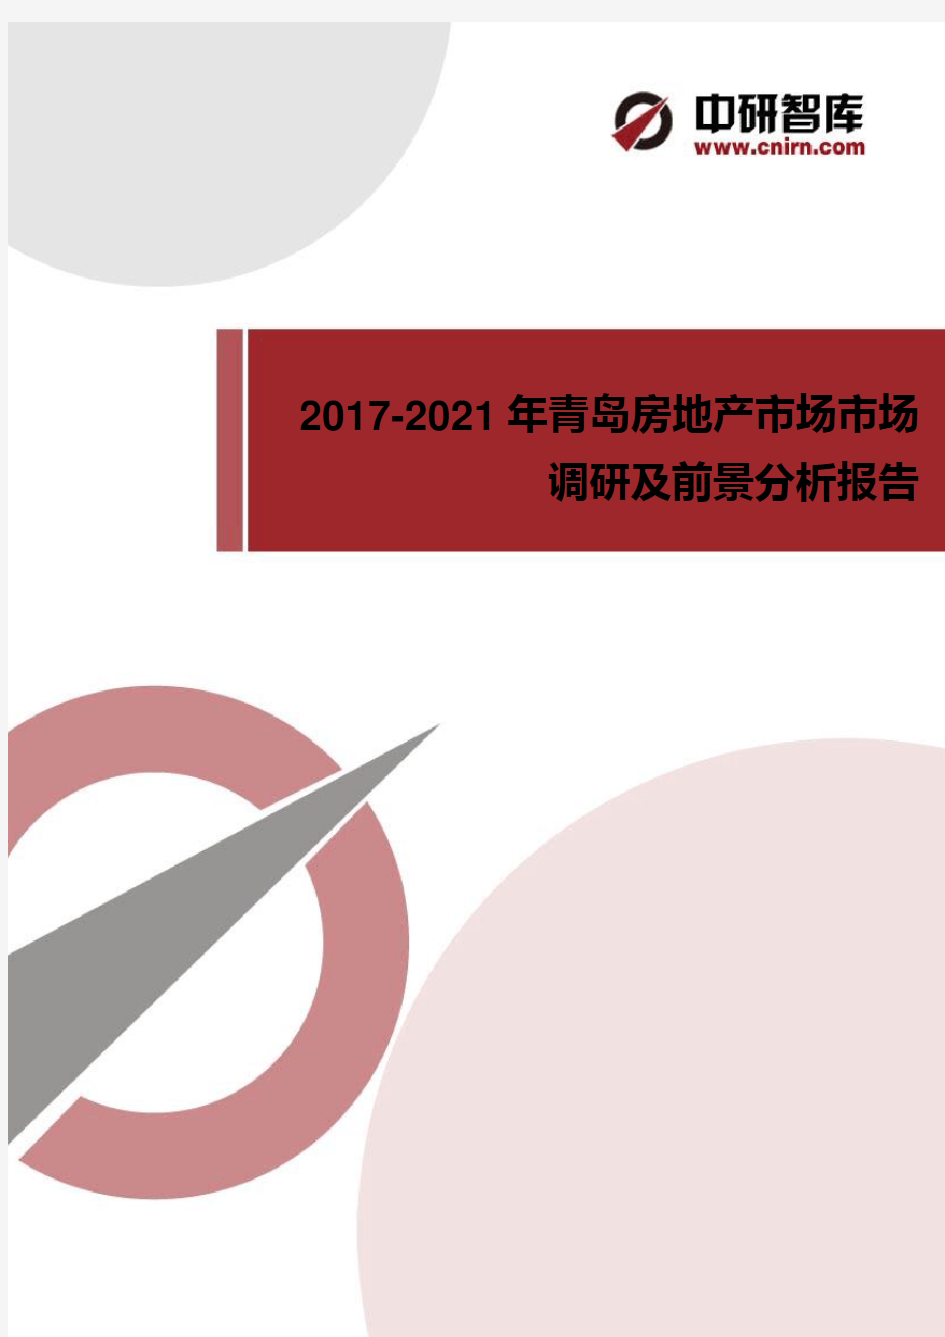 2017-2021年青岛房地产市场调研及前景分析报告